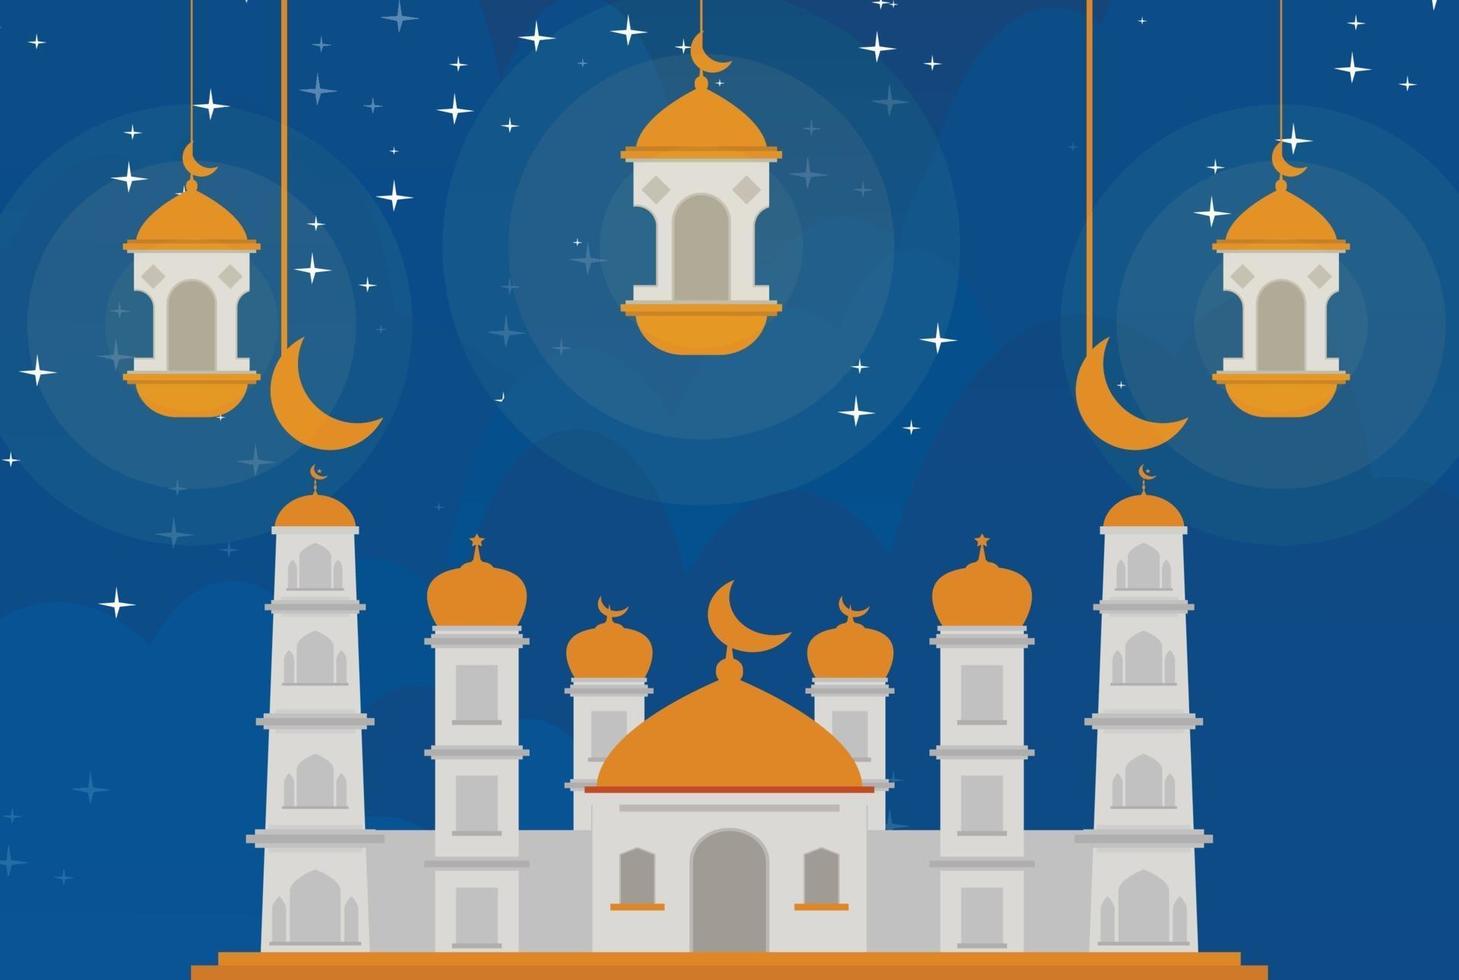 Islamischer Hintergrund mit Laternenmoschee und Mondlicht kostenloser Download vektor